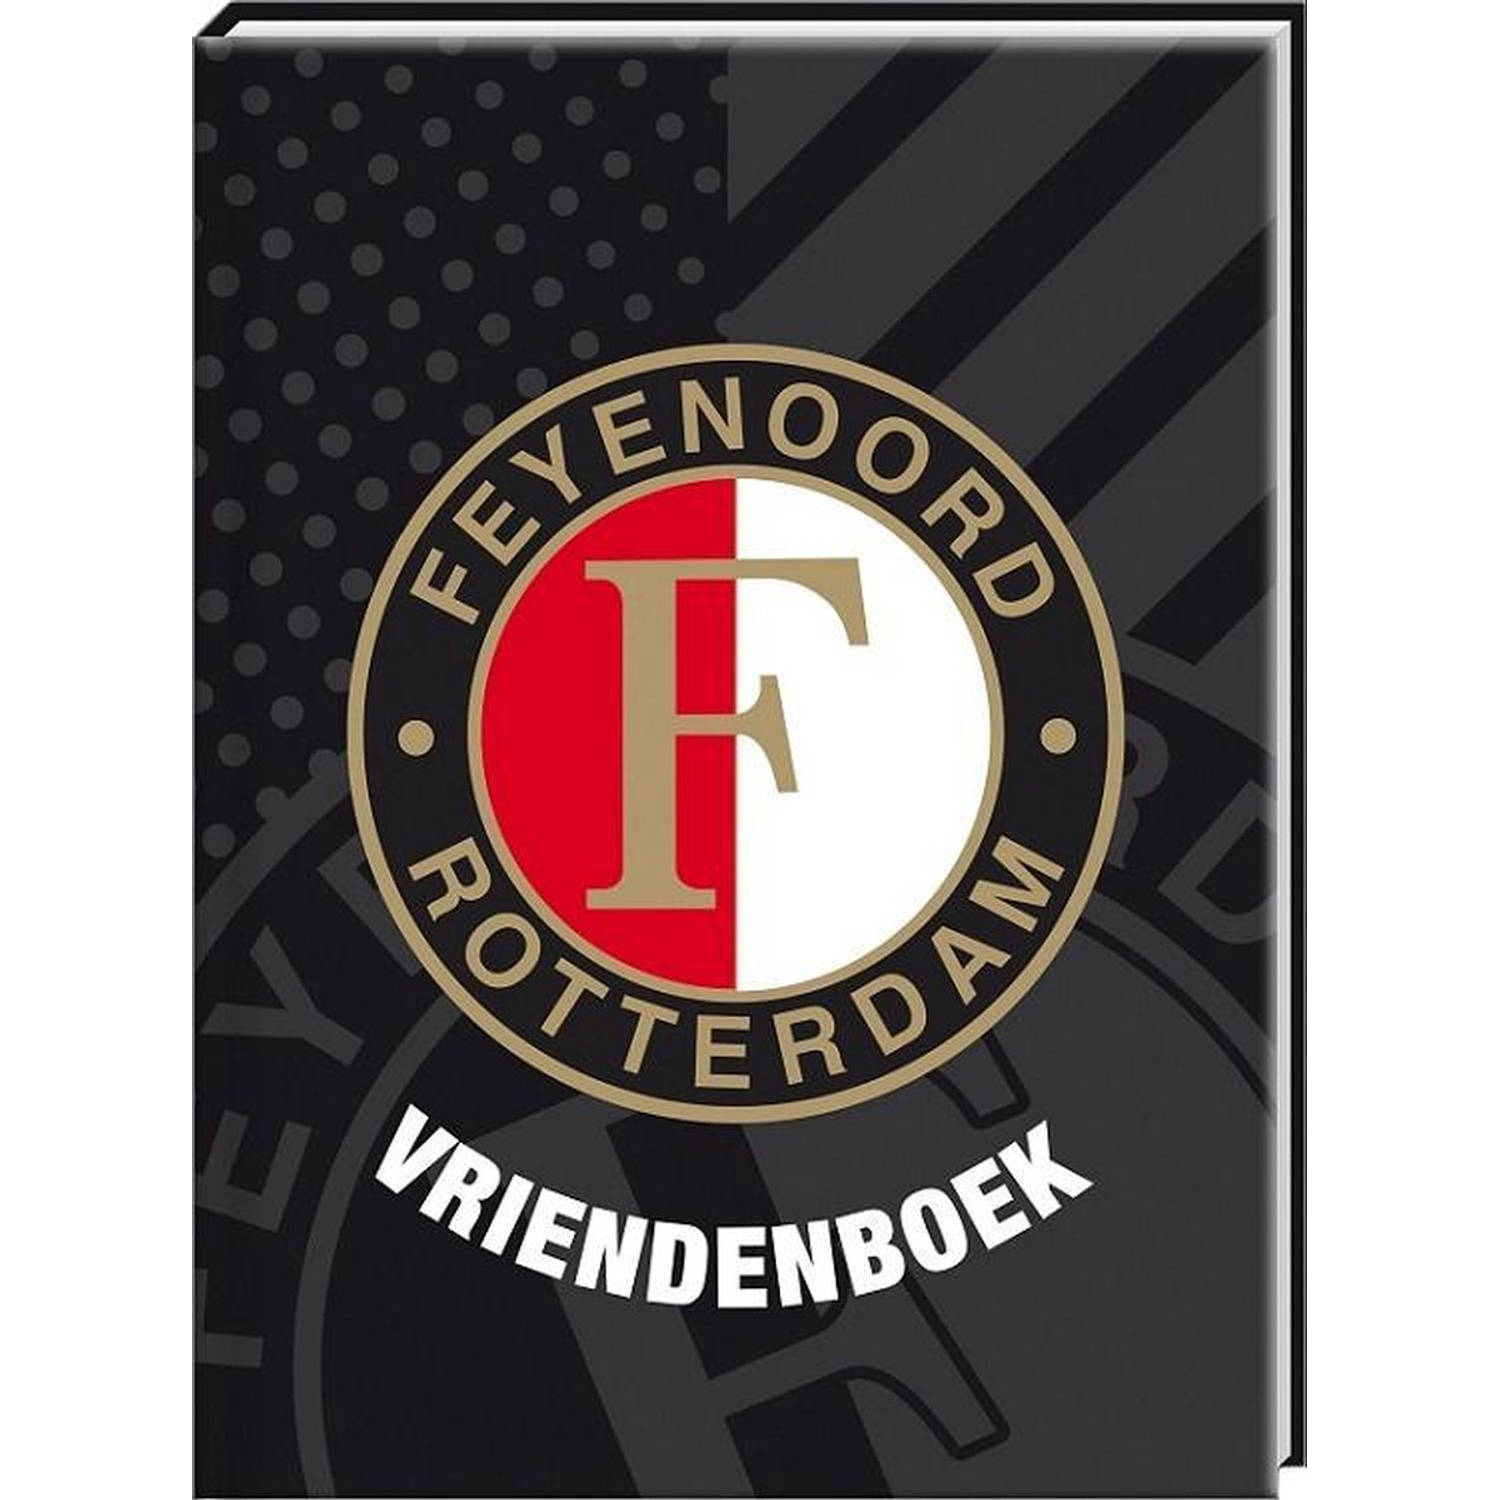 Vriendenboek - Feyenoord